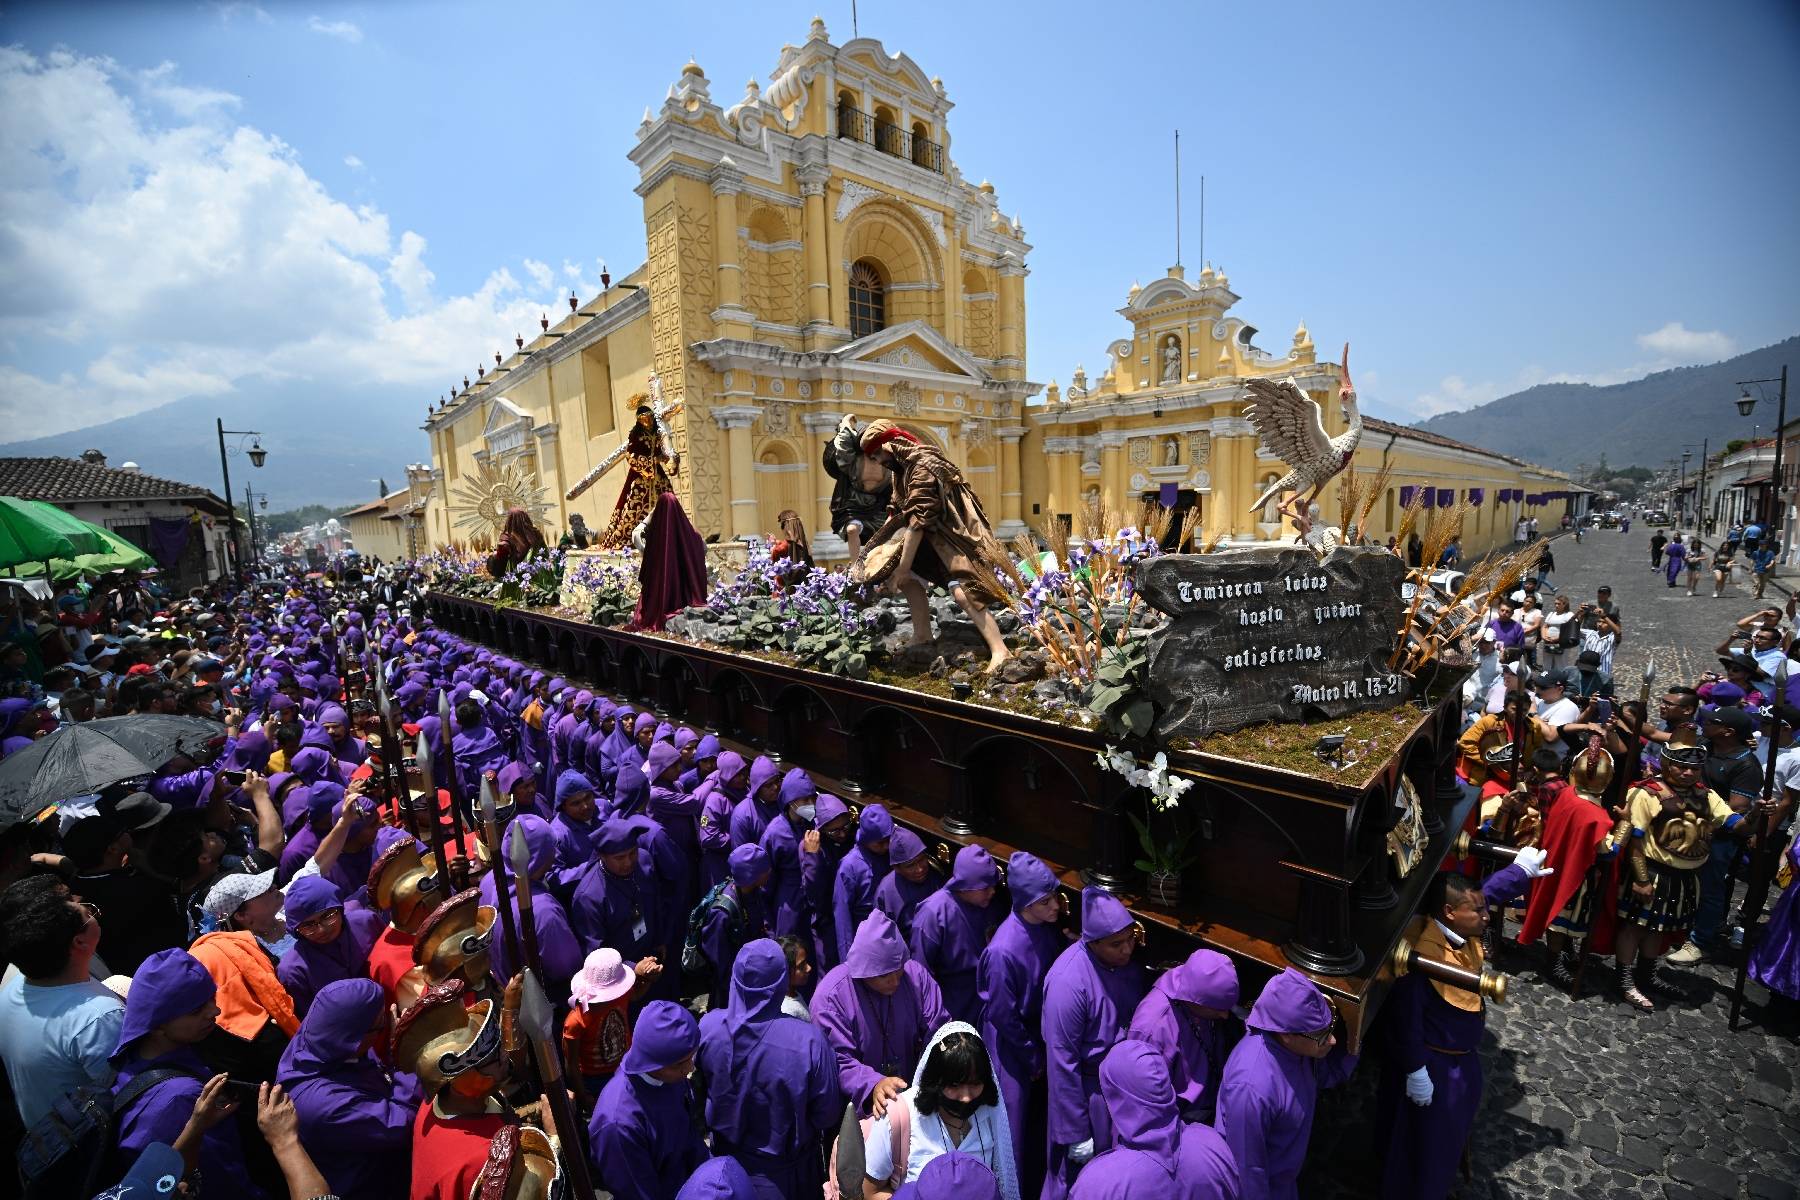 Le Guatemala célèbre avec dévotion la Semaine Sainte, inscrite au Patrimoine mondial